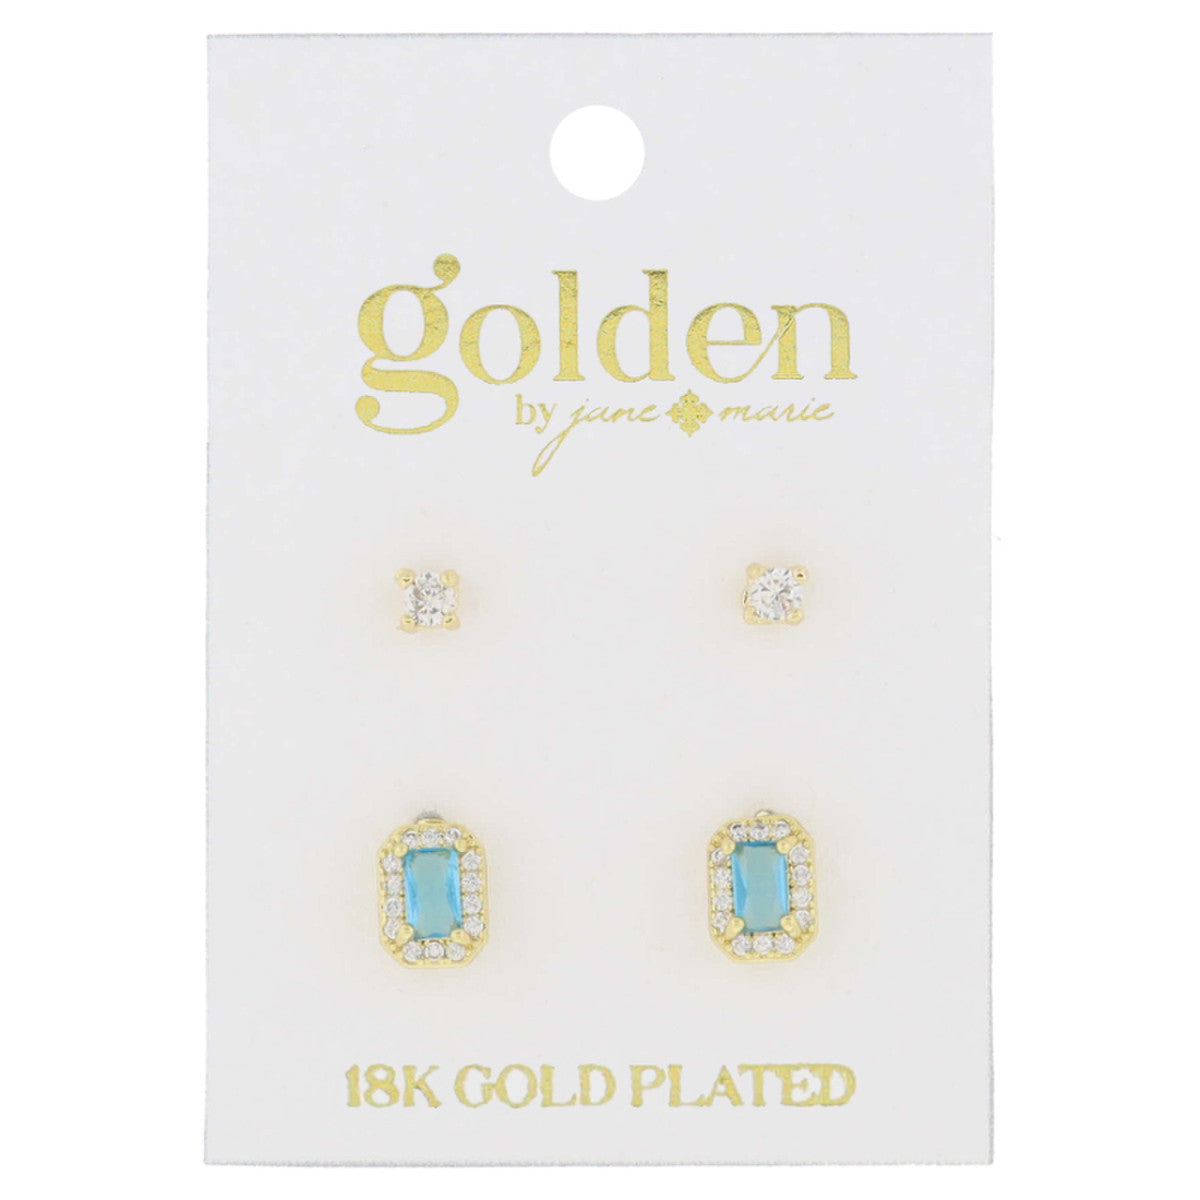 Golden Birthstone Earring Set